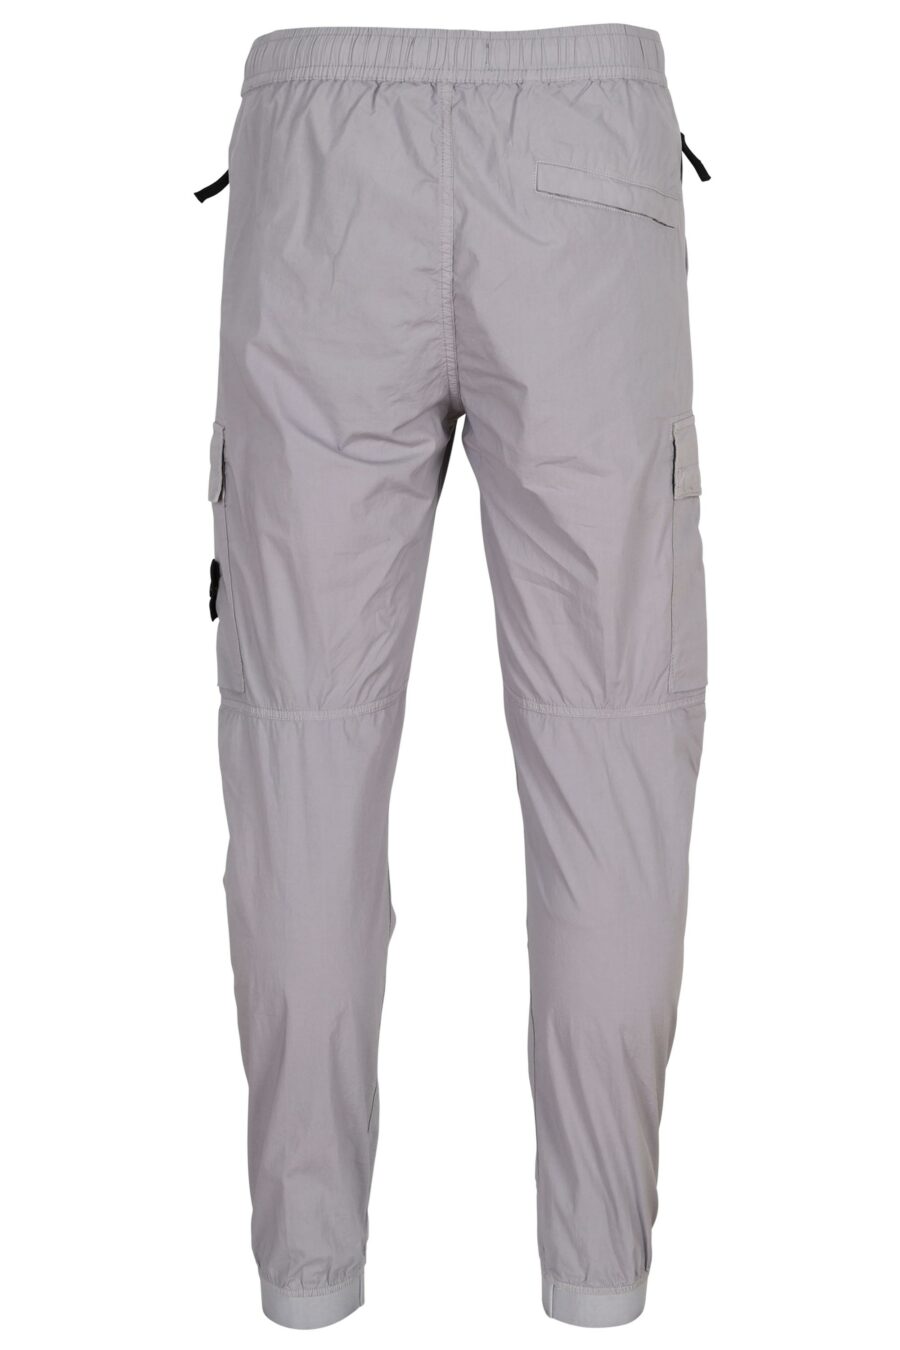 Pantalon fuselé gris lilas avec logo boussole - 8052572926846 1